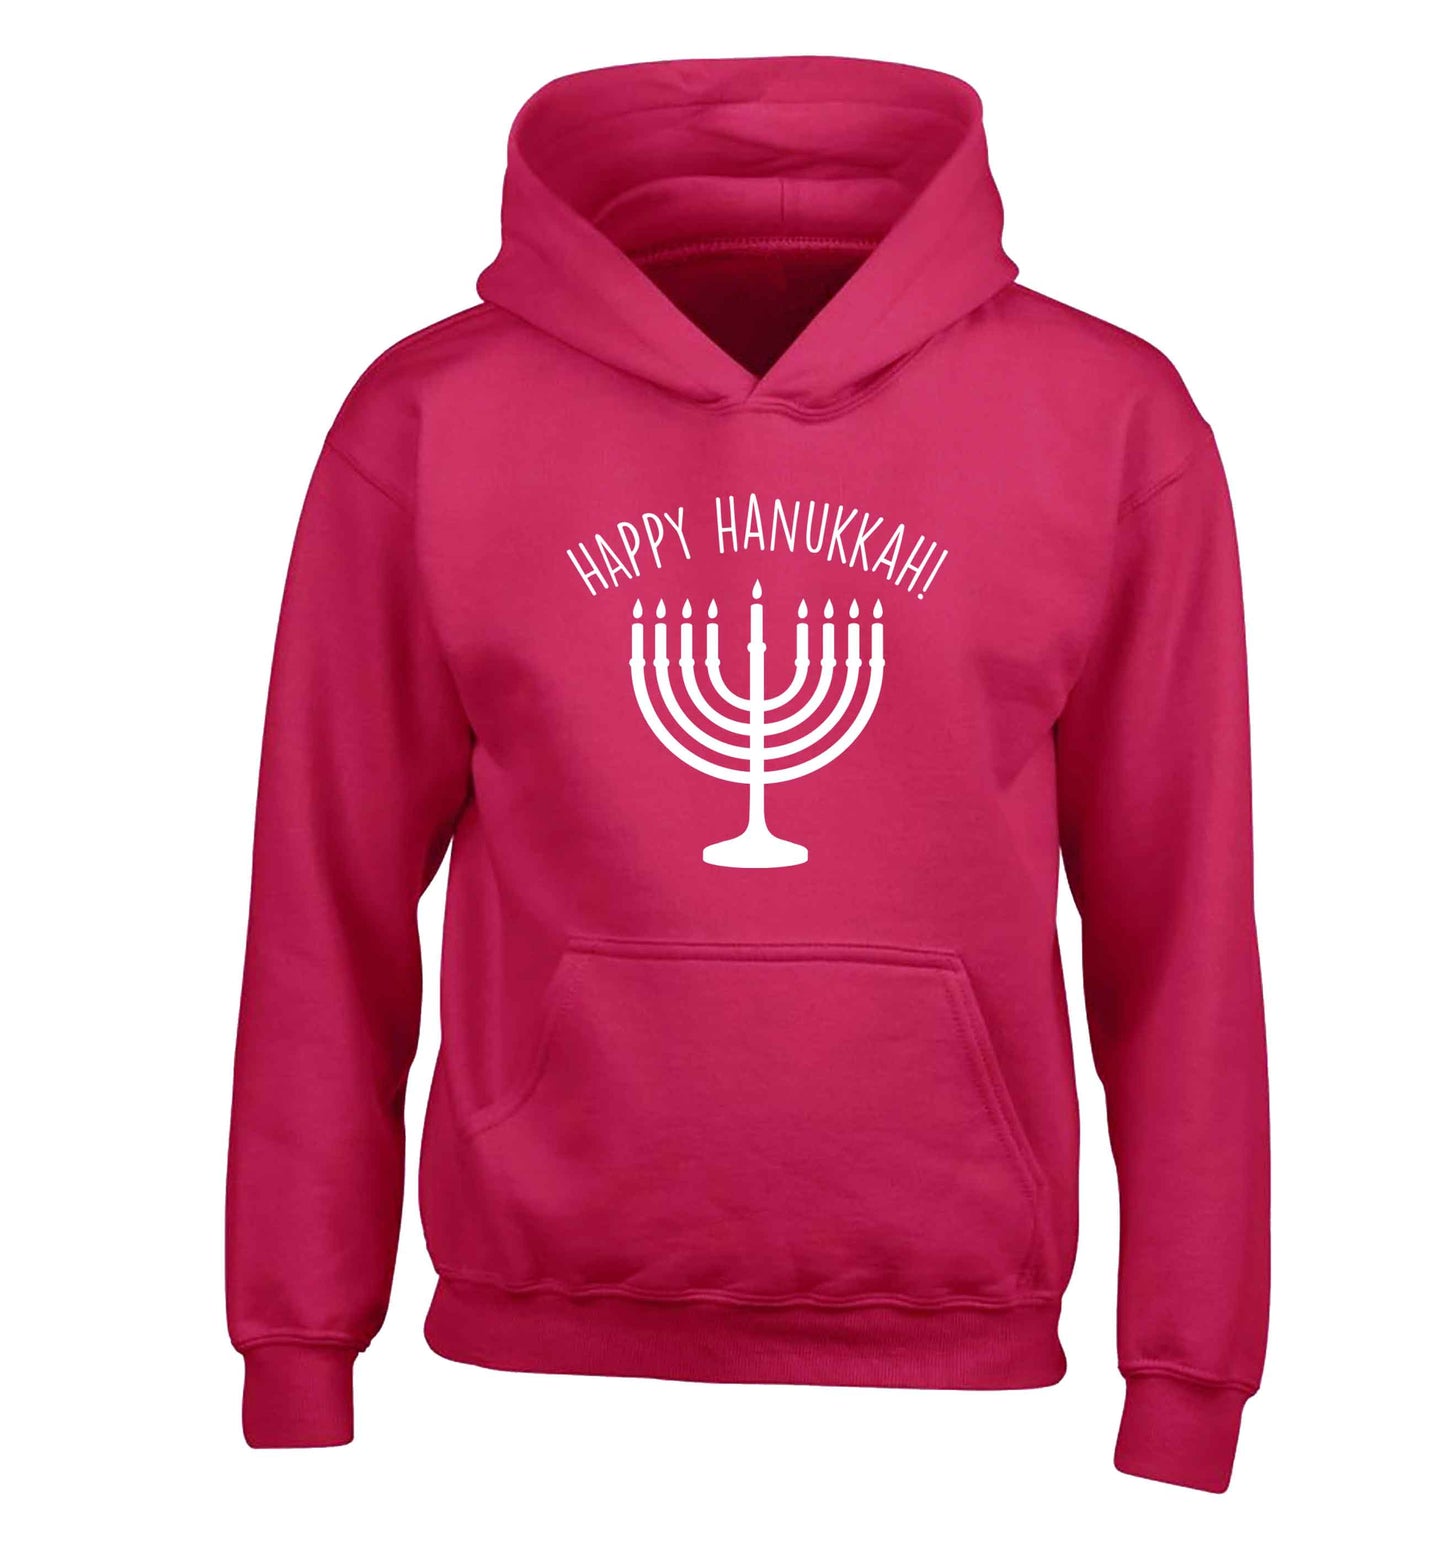 Happy hanukkah children's pink hoodie 12-13 Years